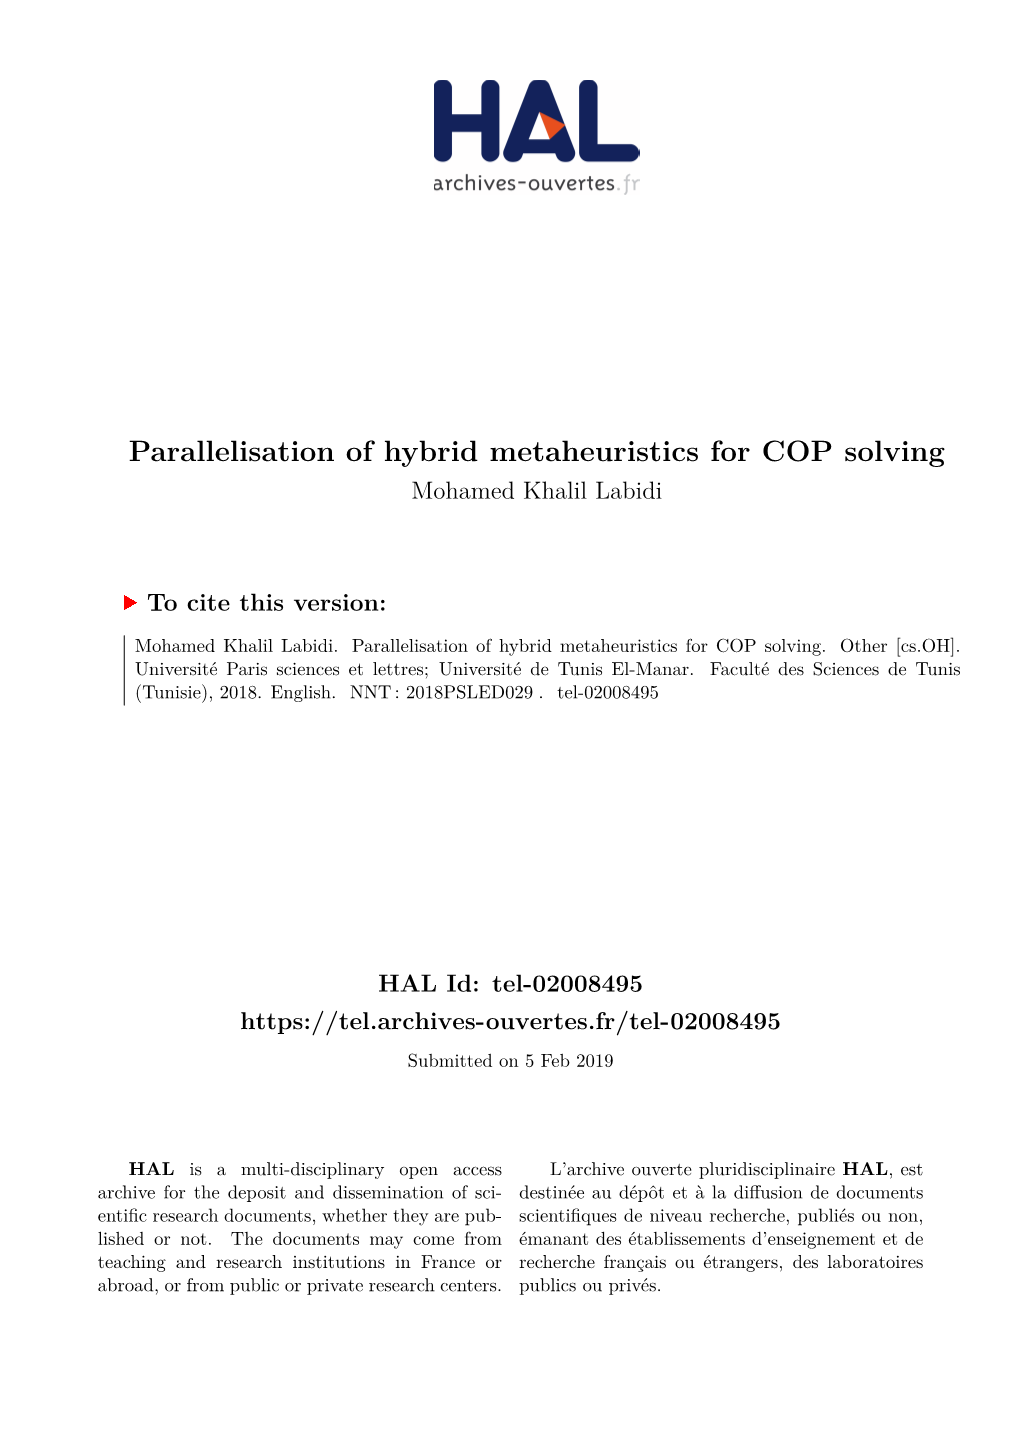 Parallelisation of Hybrid Metaheuristics for COP Solving Mohamed Khalil Labidi